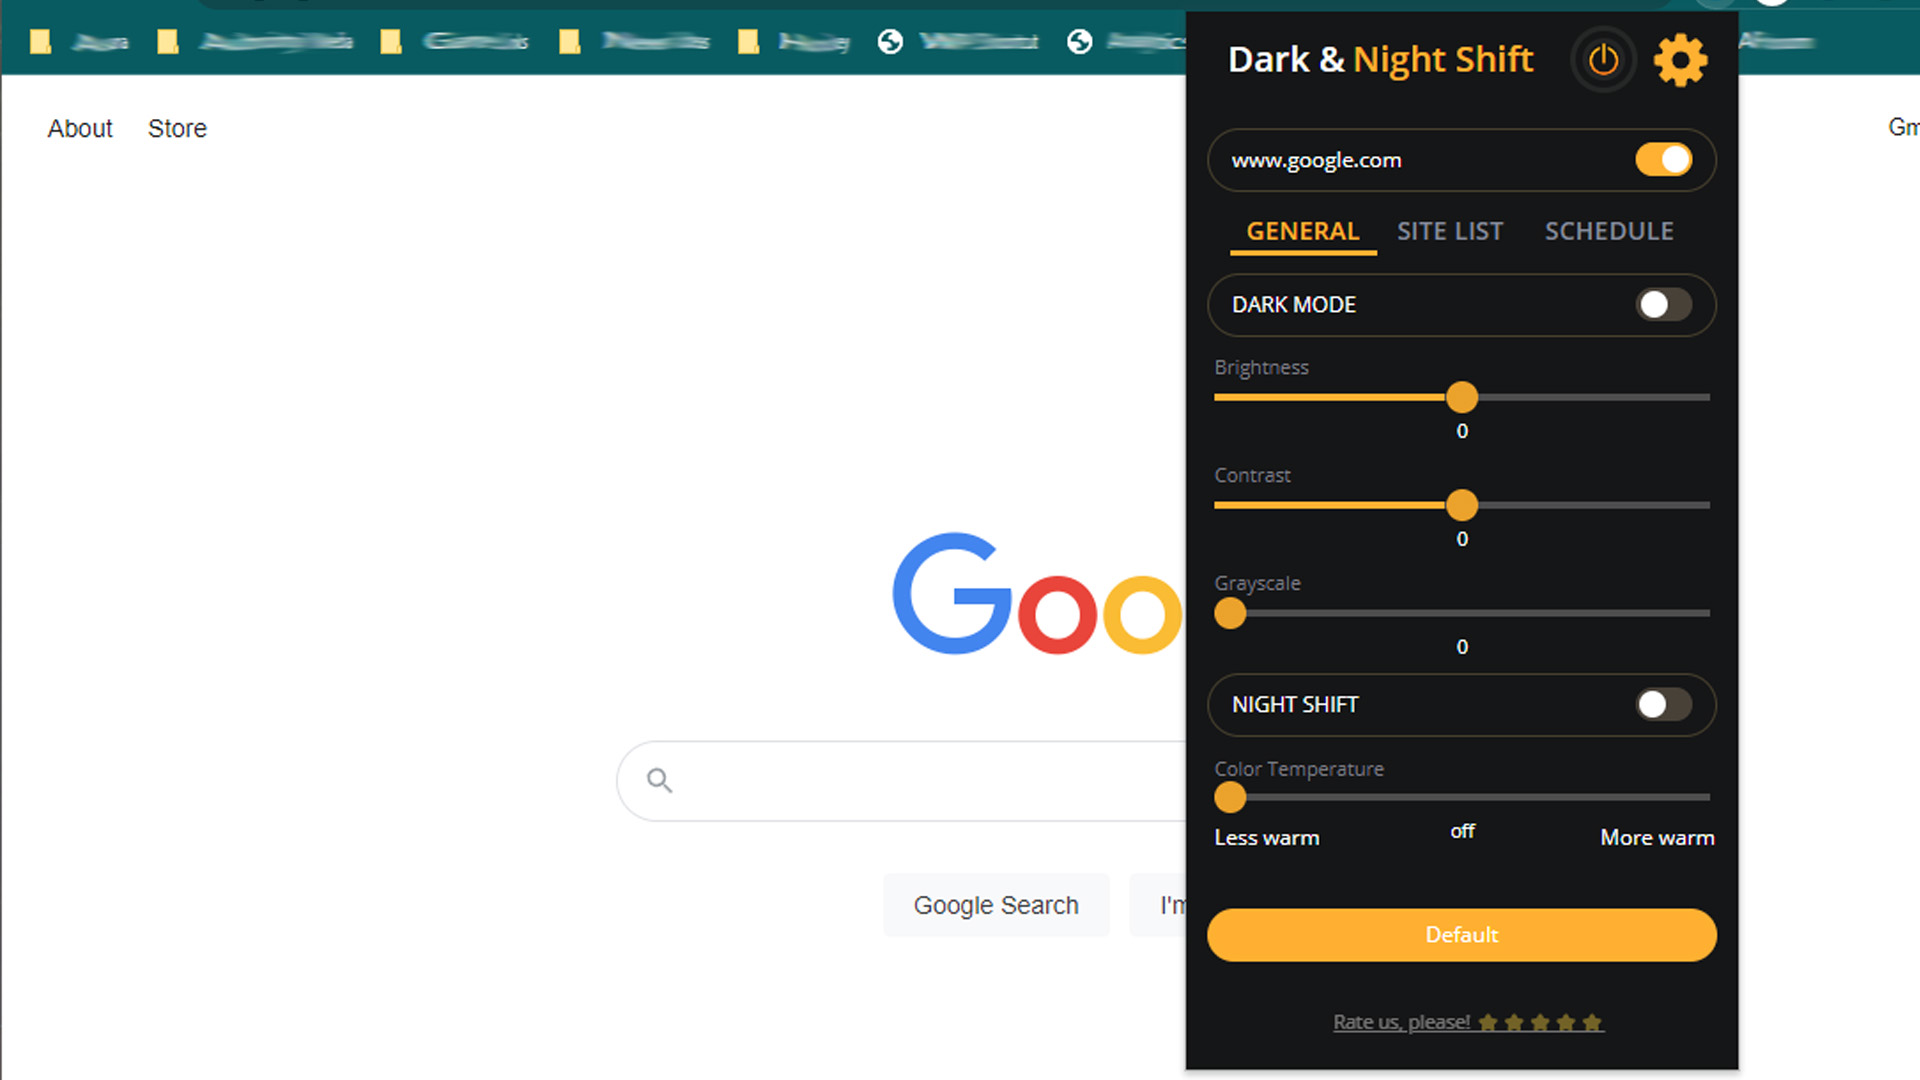 Captura de pantalla del tema oscuro y el modo Night Shift